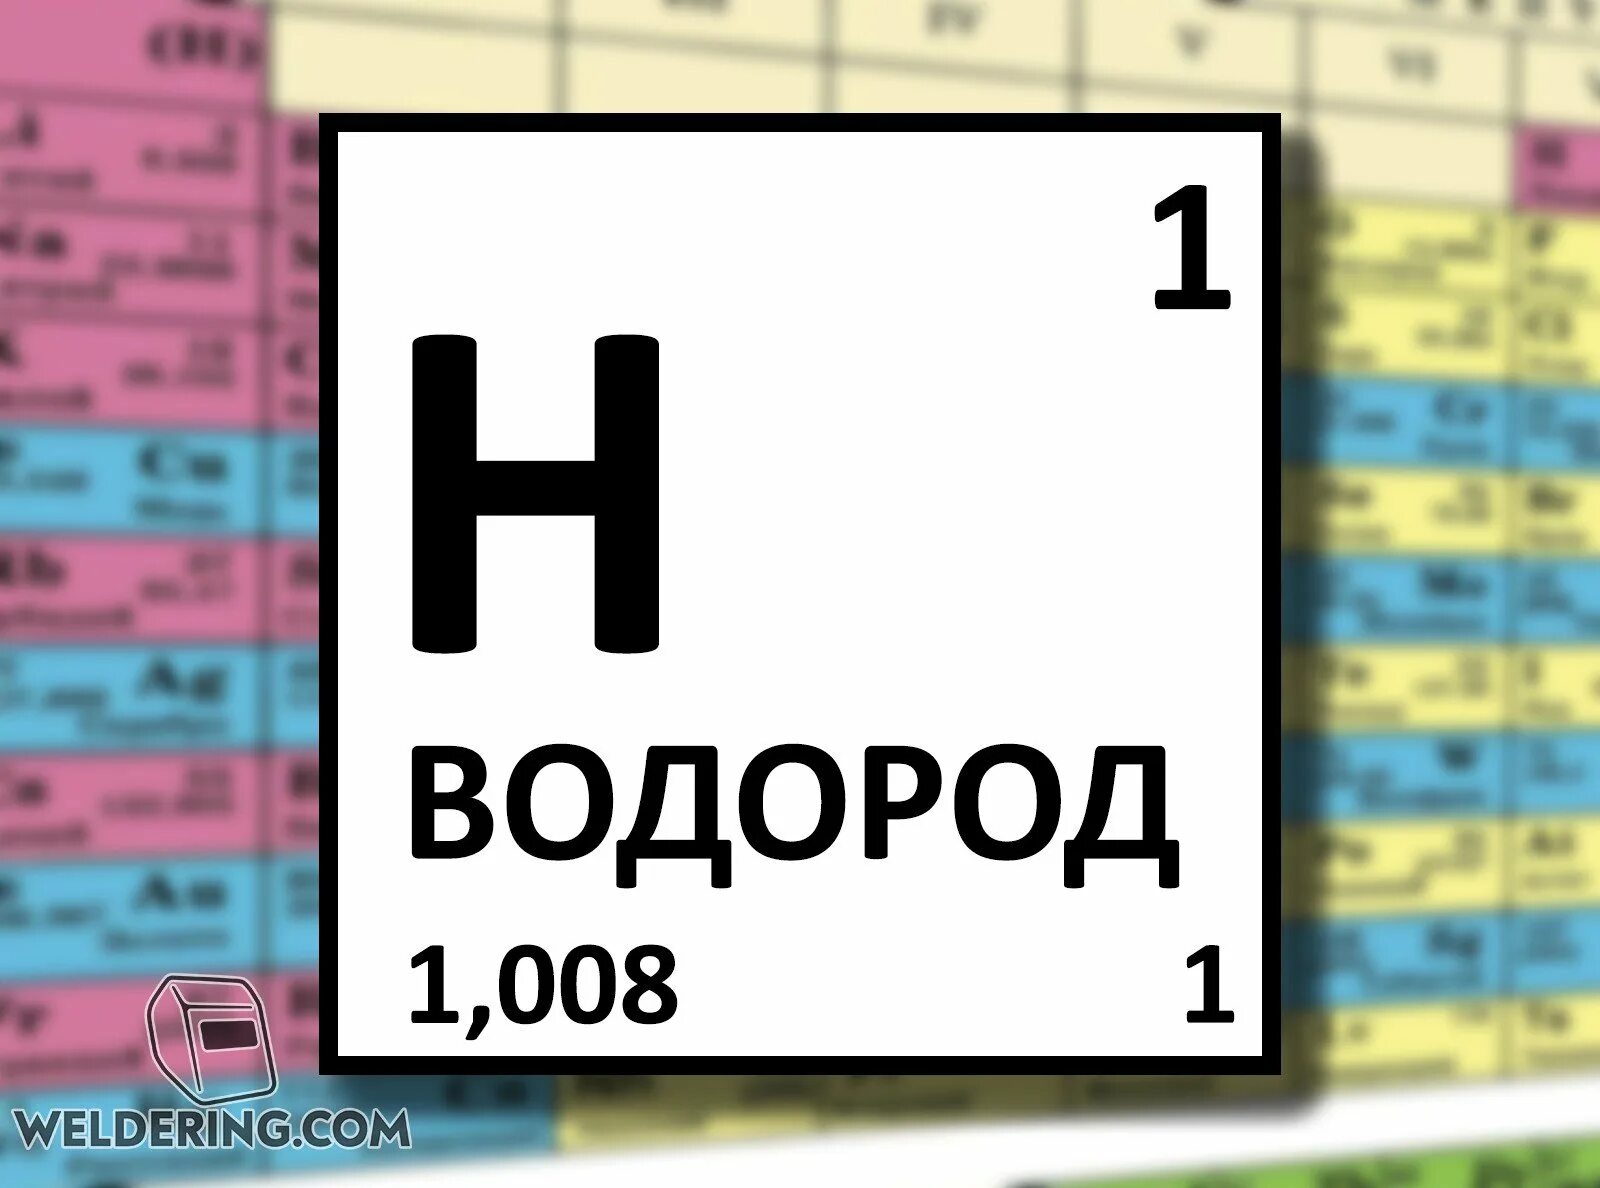 Водород первый элемент. Водород элемент таблицы Менделеева. Гидроген в таблице Менделеева. Таблица химических элементов Менделеева водород. Водород в периодической системе.